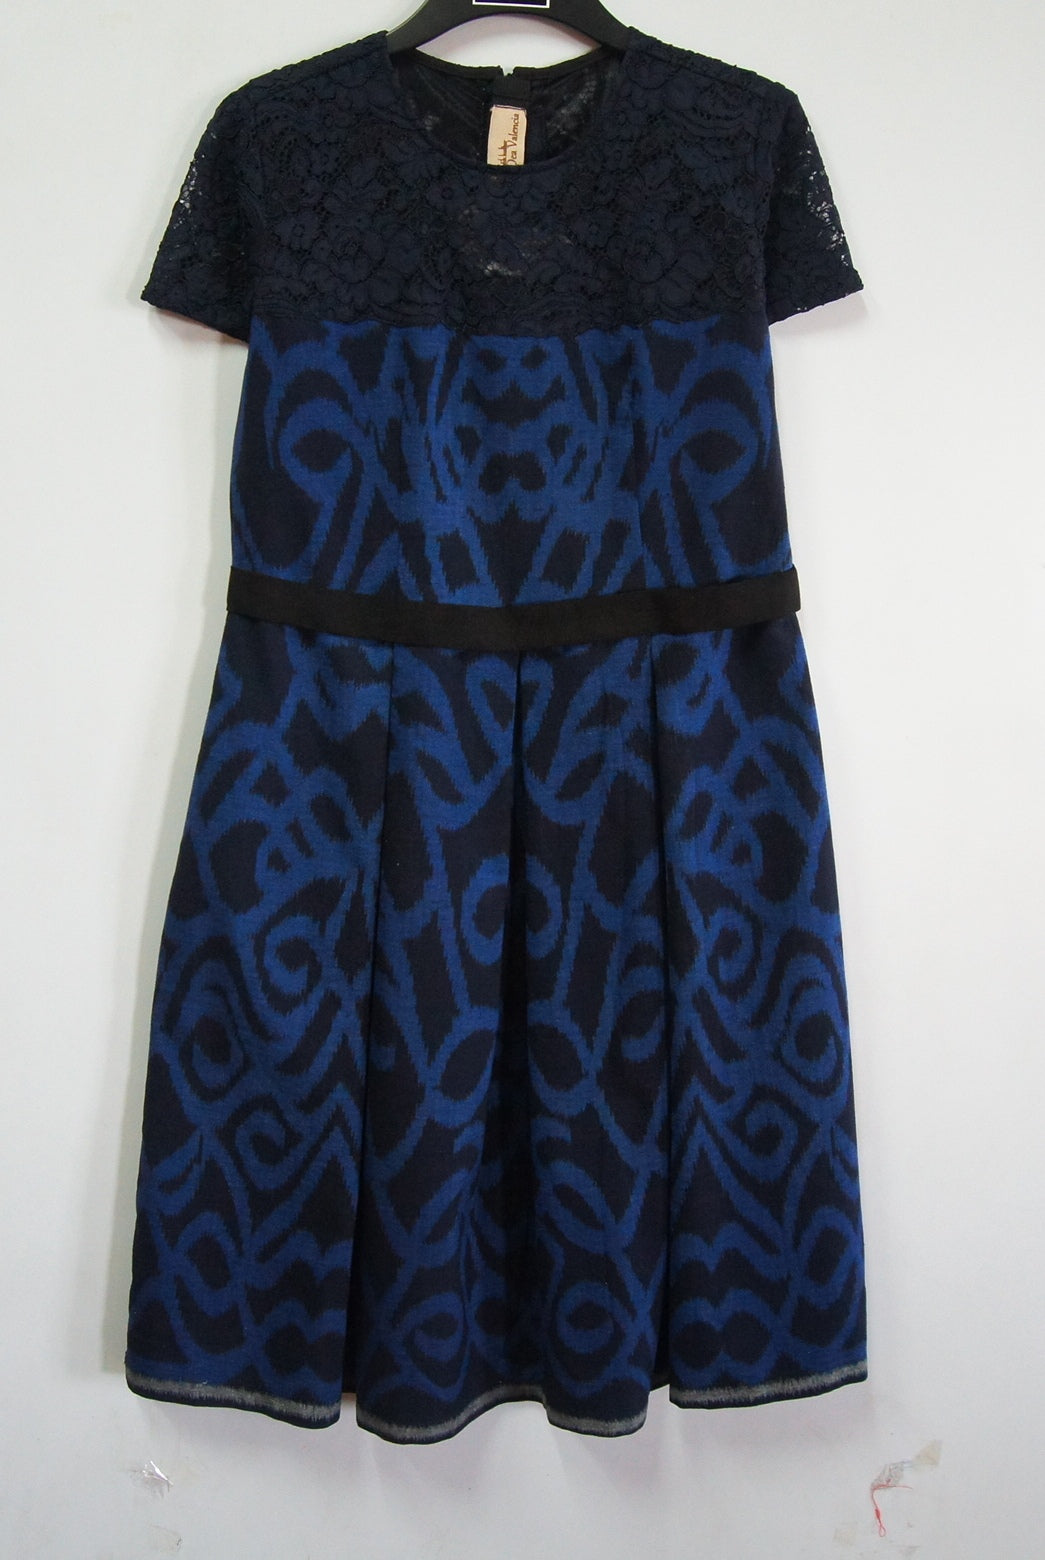 LTD0233 Dress (M)